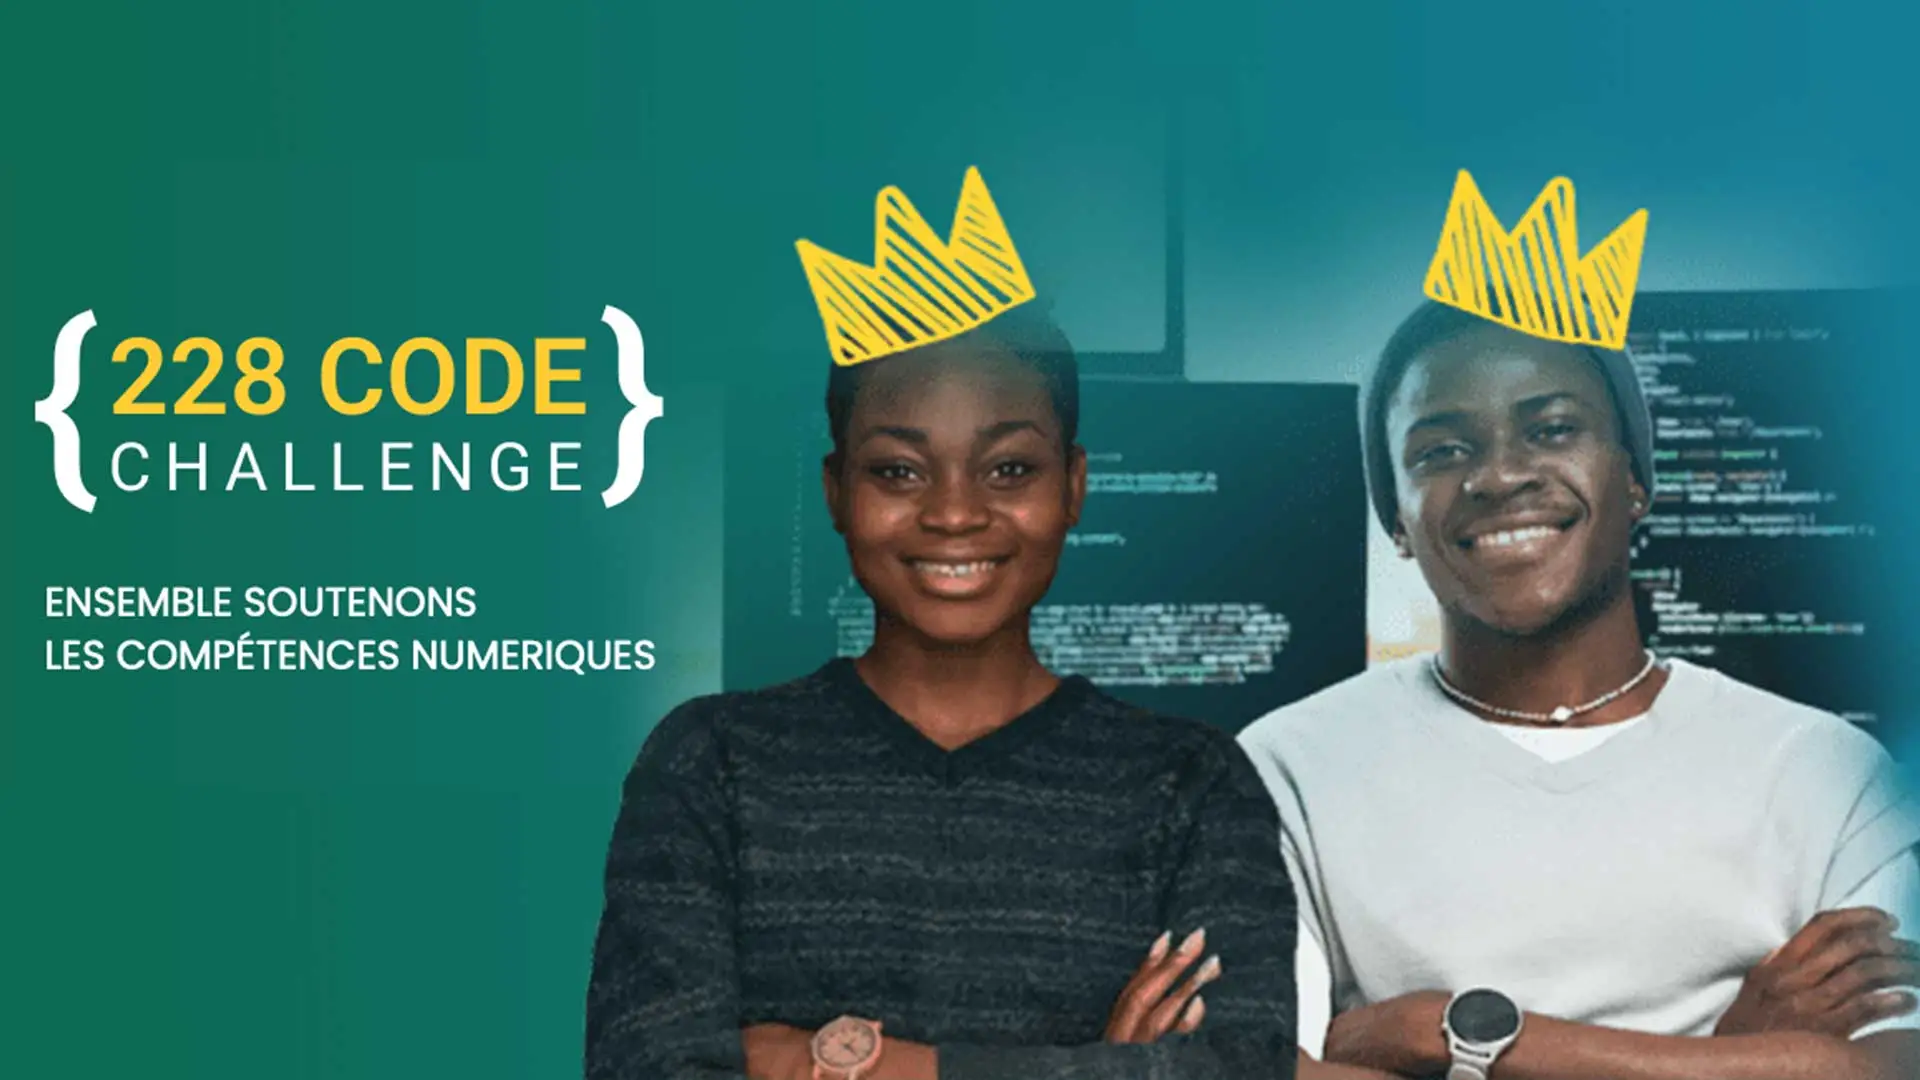  Le 228 Code Challenge pour développeurs Togolais.